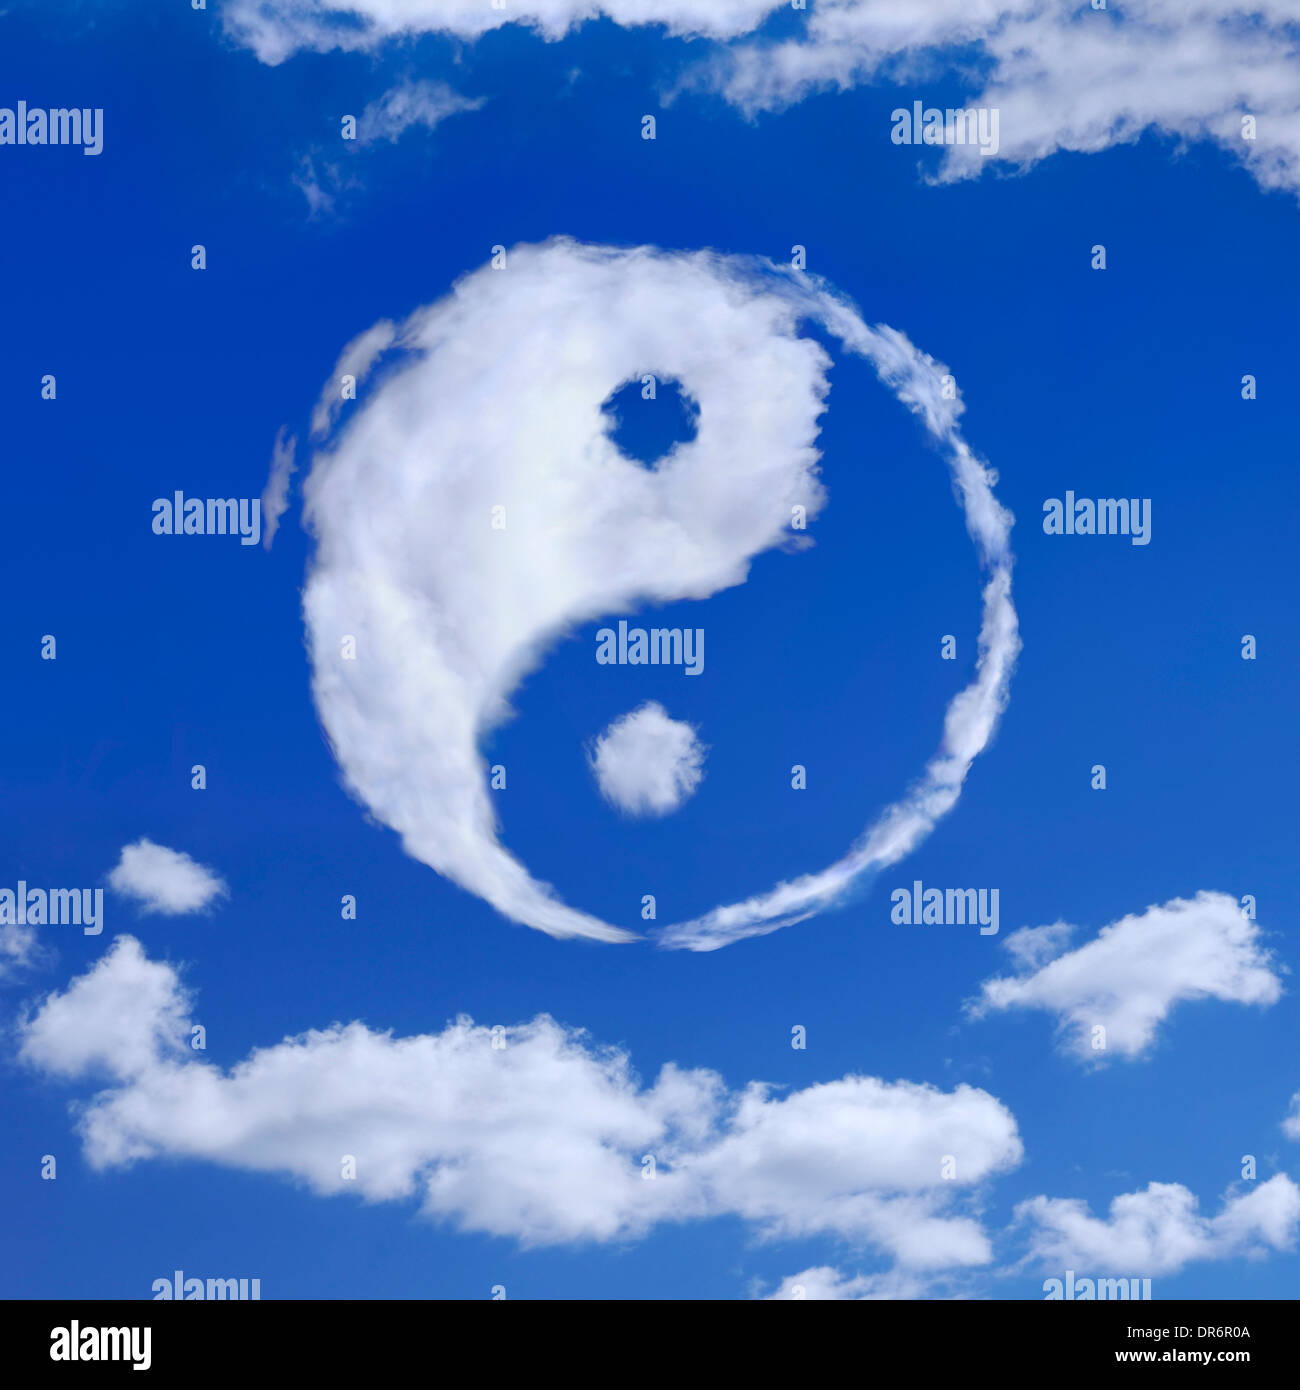 Yin-Yang simbolo spirituale fatta da nuvole bianche nel cielo blu. La meditazione, il concetto di spiritualità. Foto Stock